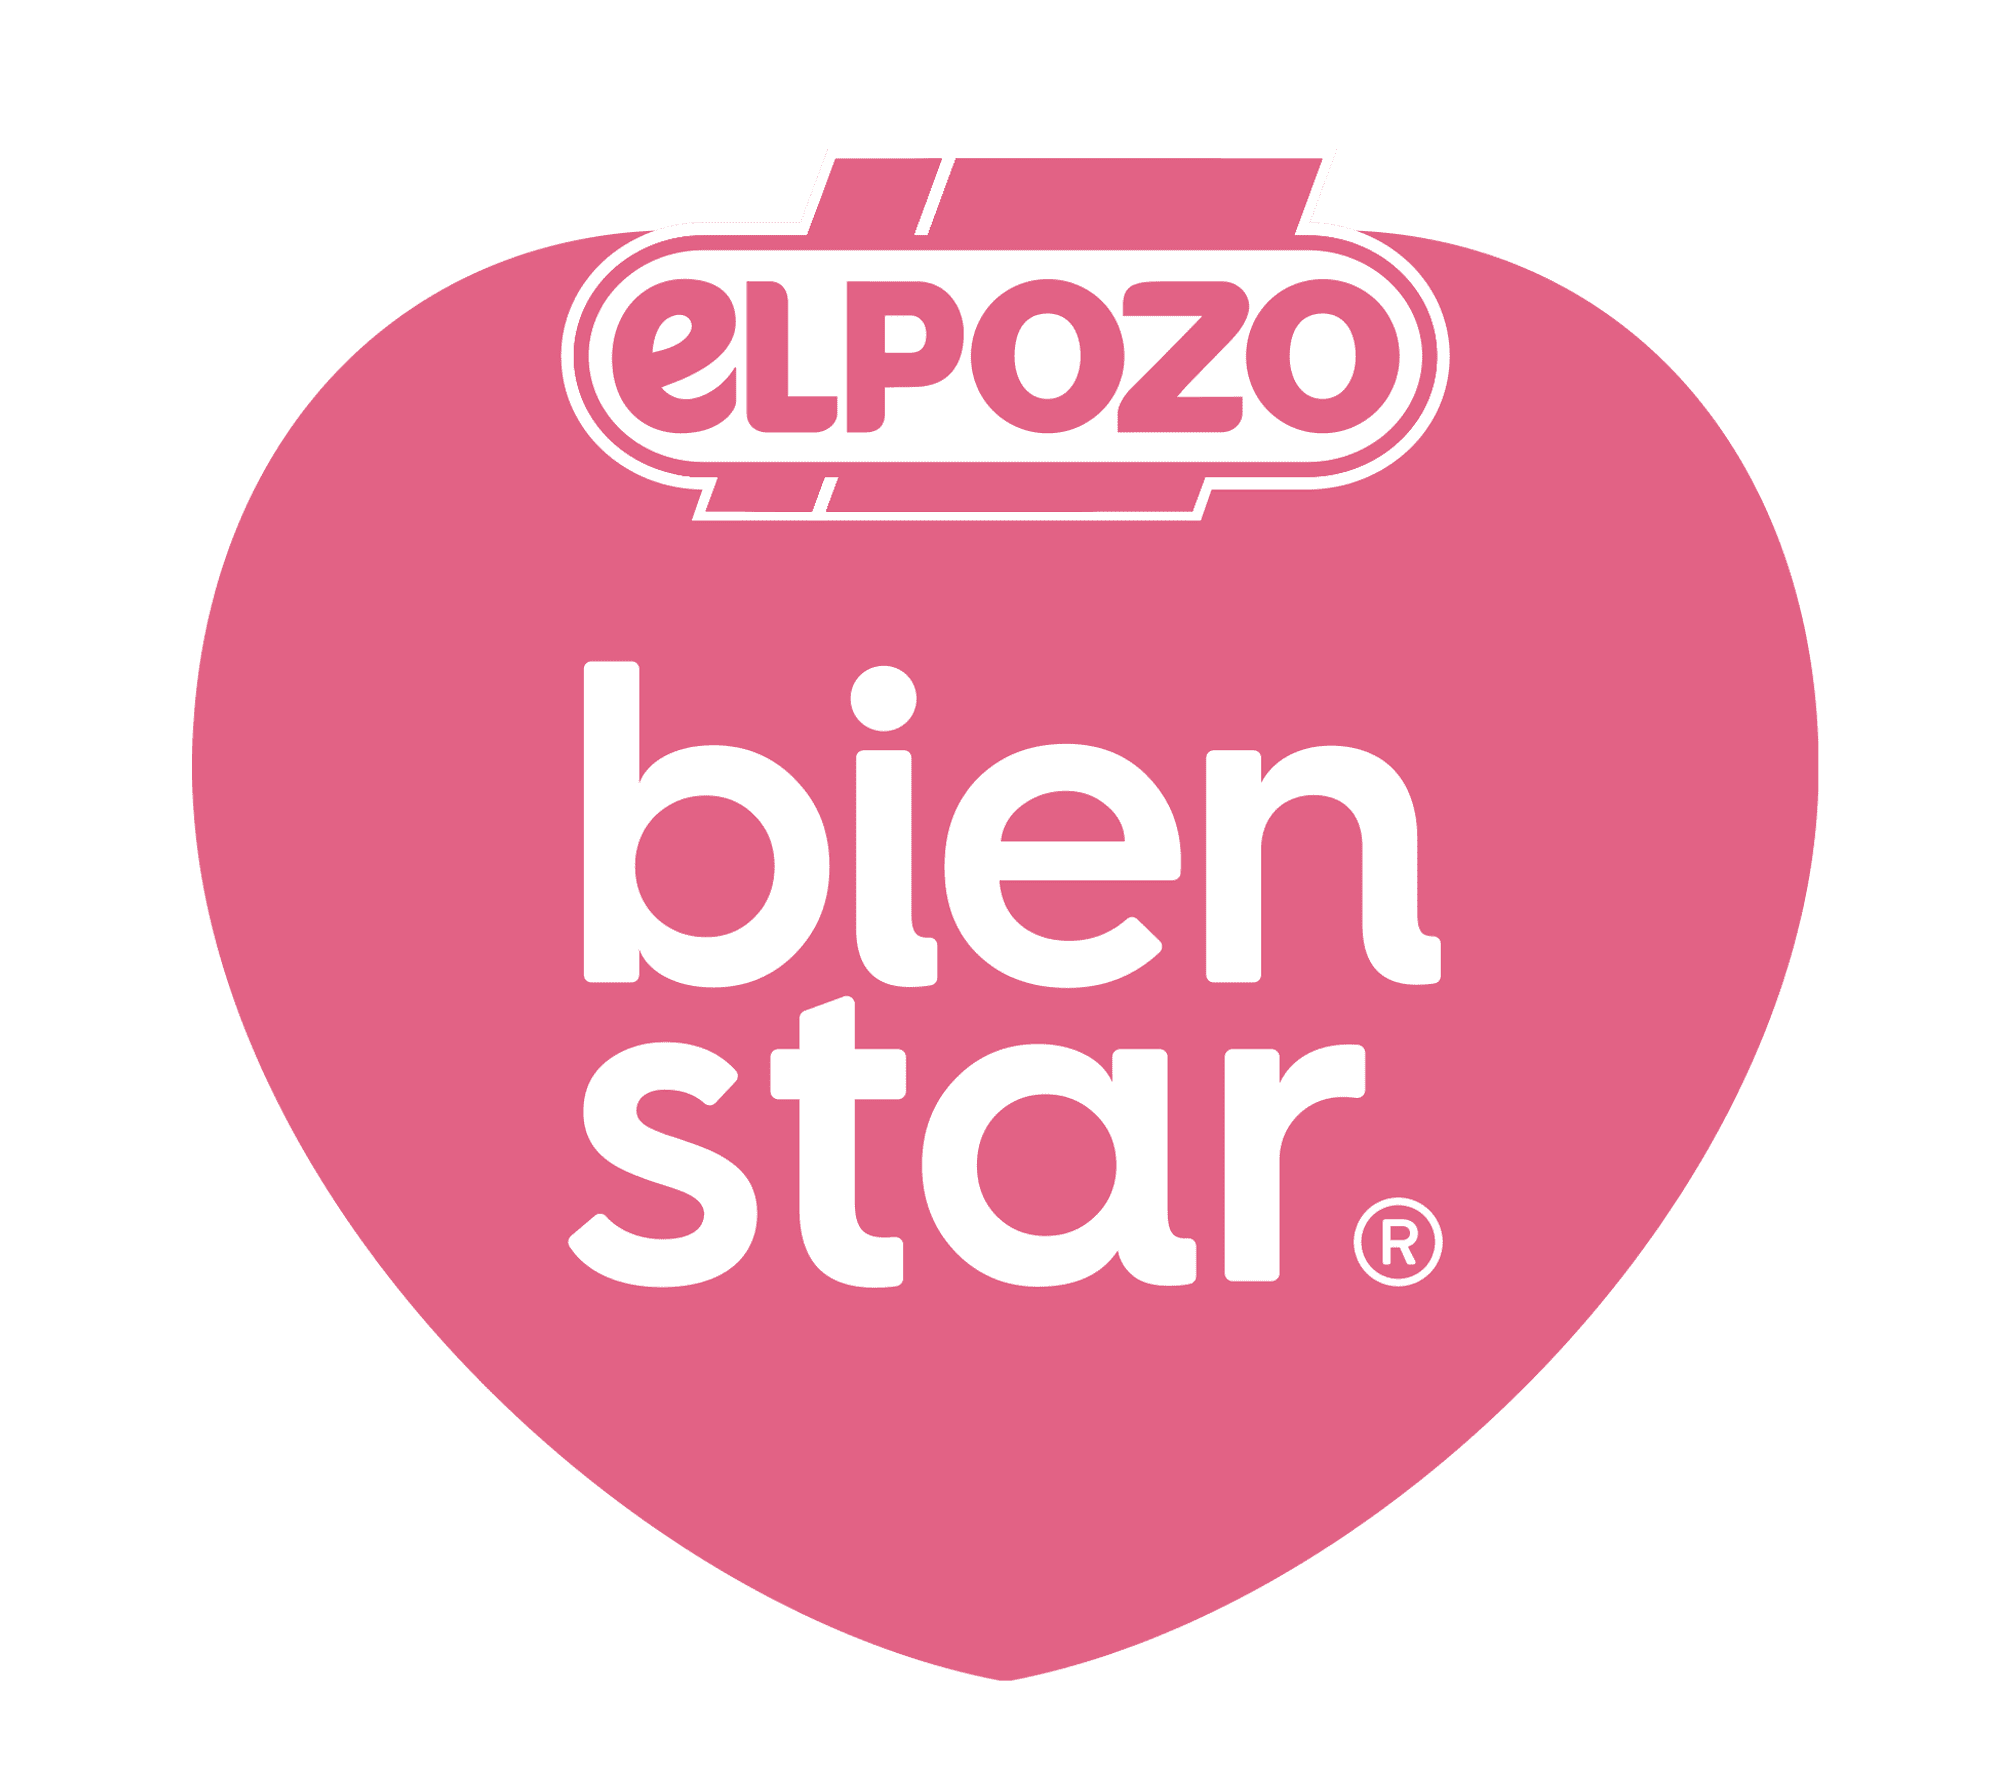 BienStar El Pozo